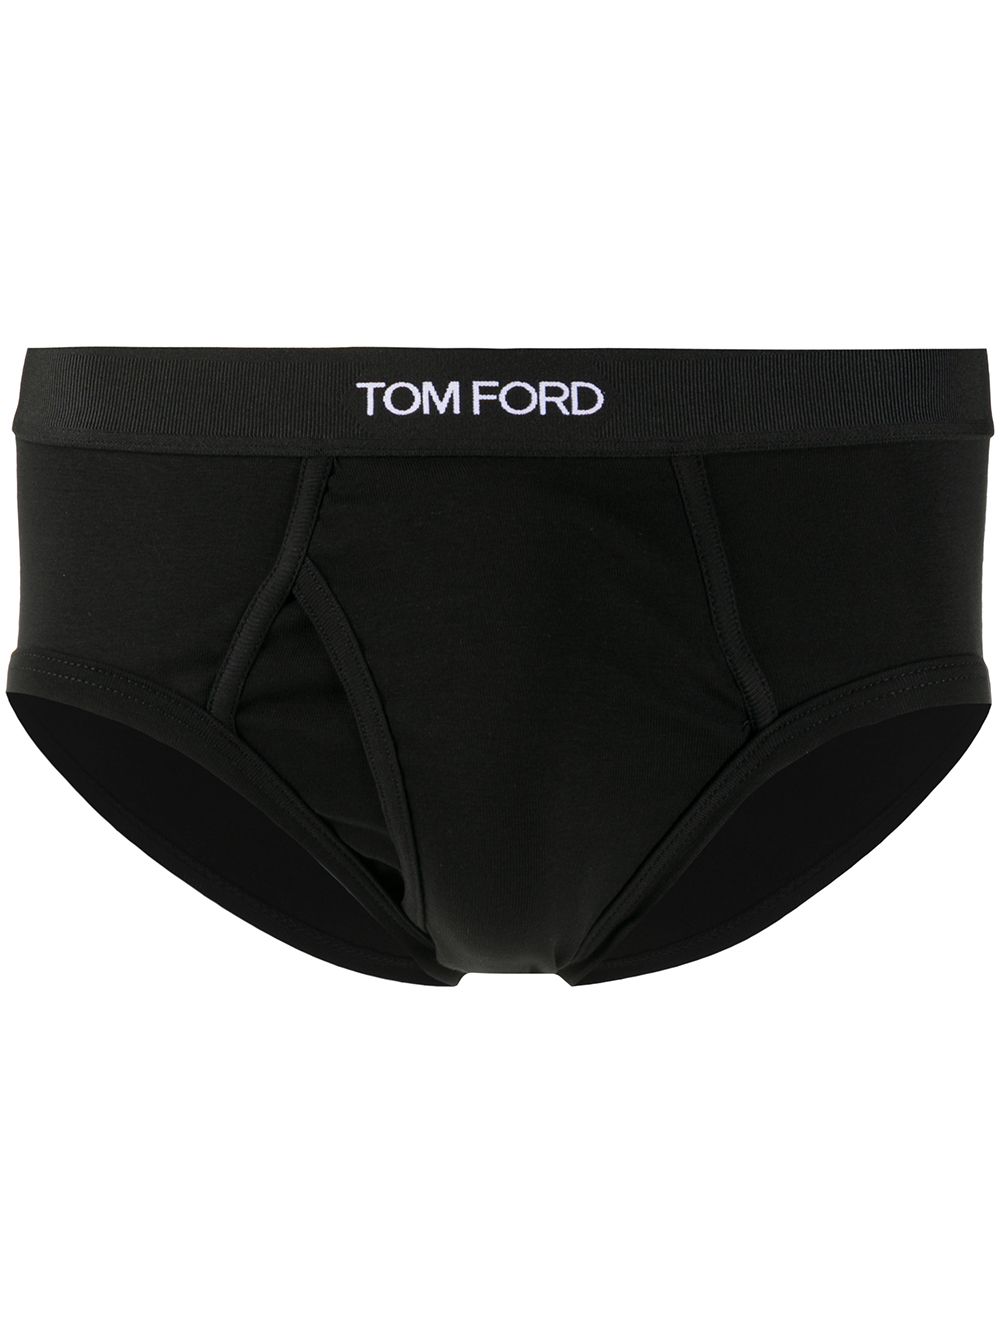 TOM FORD Logo Briefs Black - MAISONDEFASHION.COM